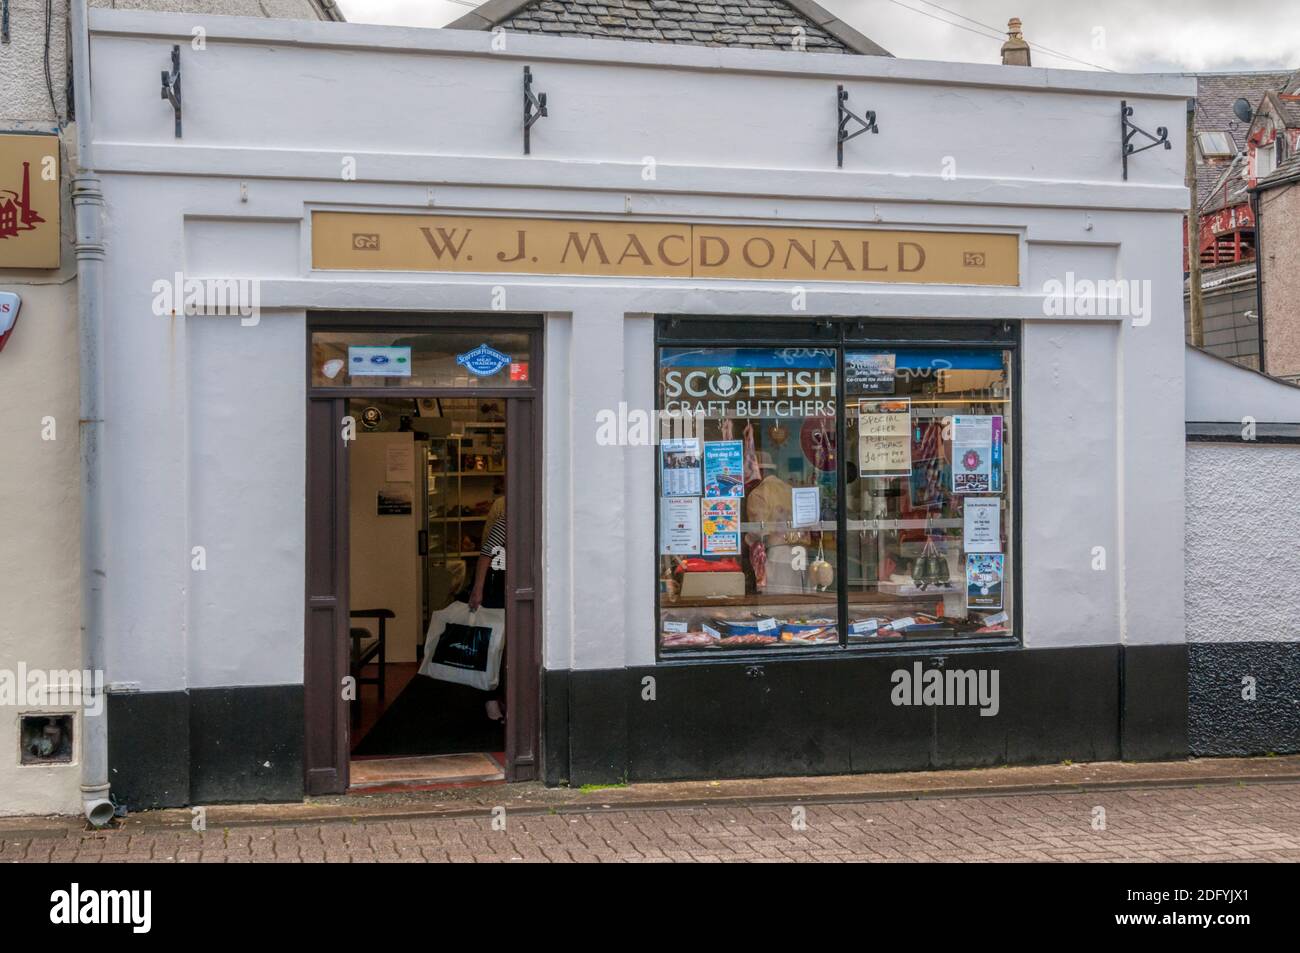 La tienda de W. J. Macdonald, Scottish Craft Butchers en Stornoway en la Isla de Lewis en las Hébridas Exteriores. Foto de stock